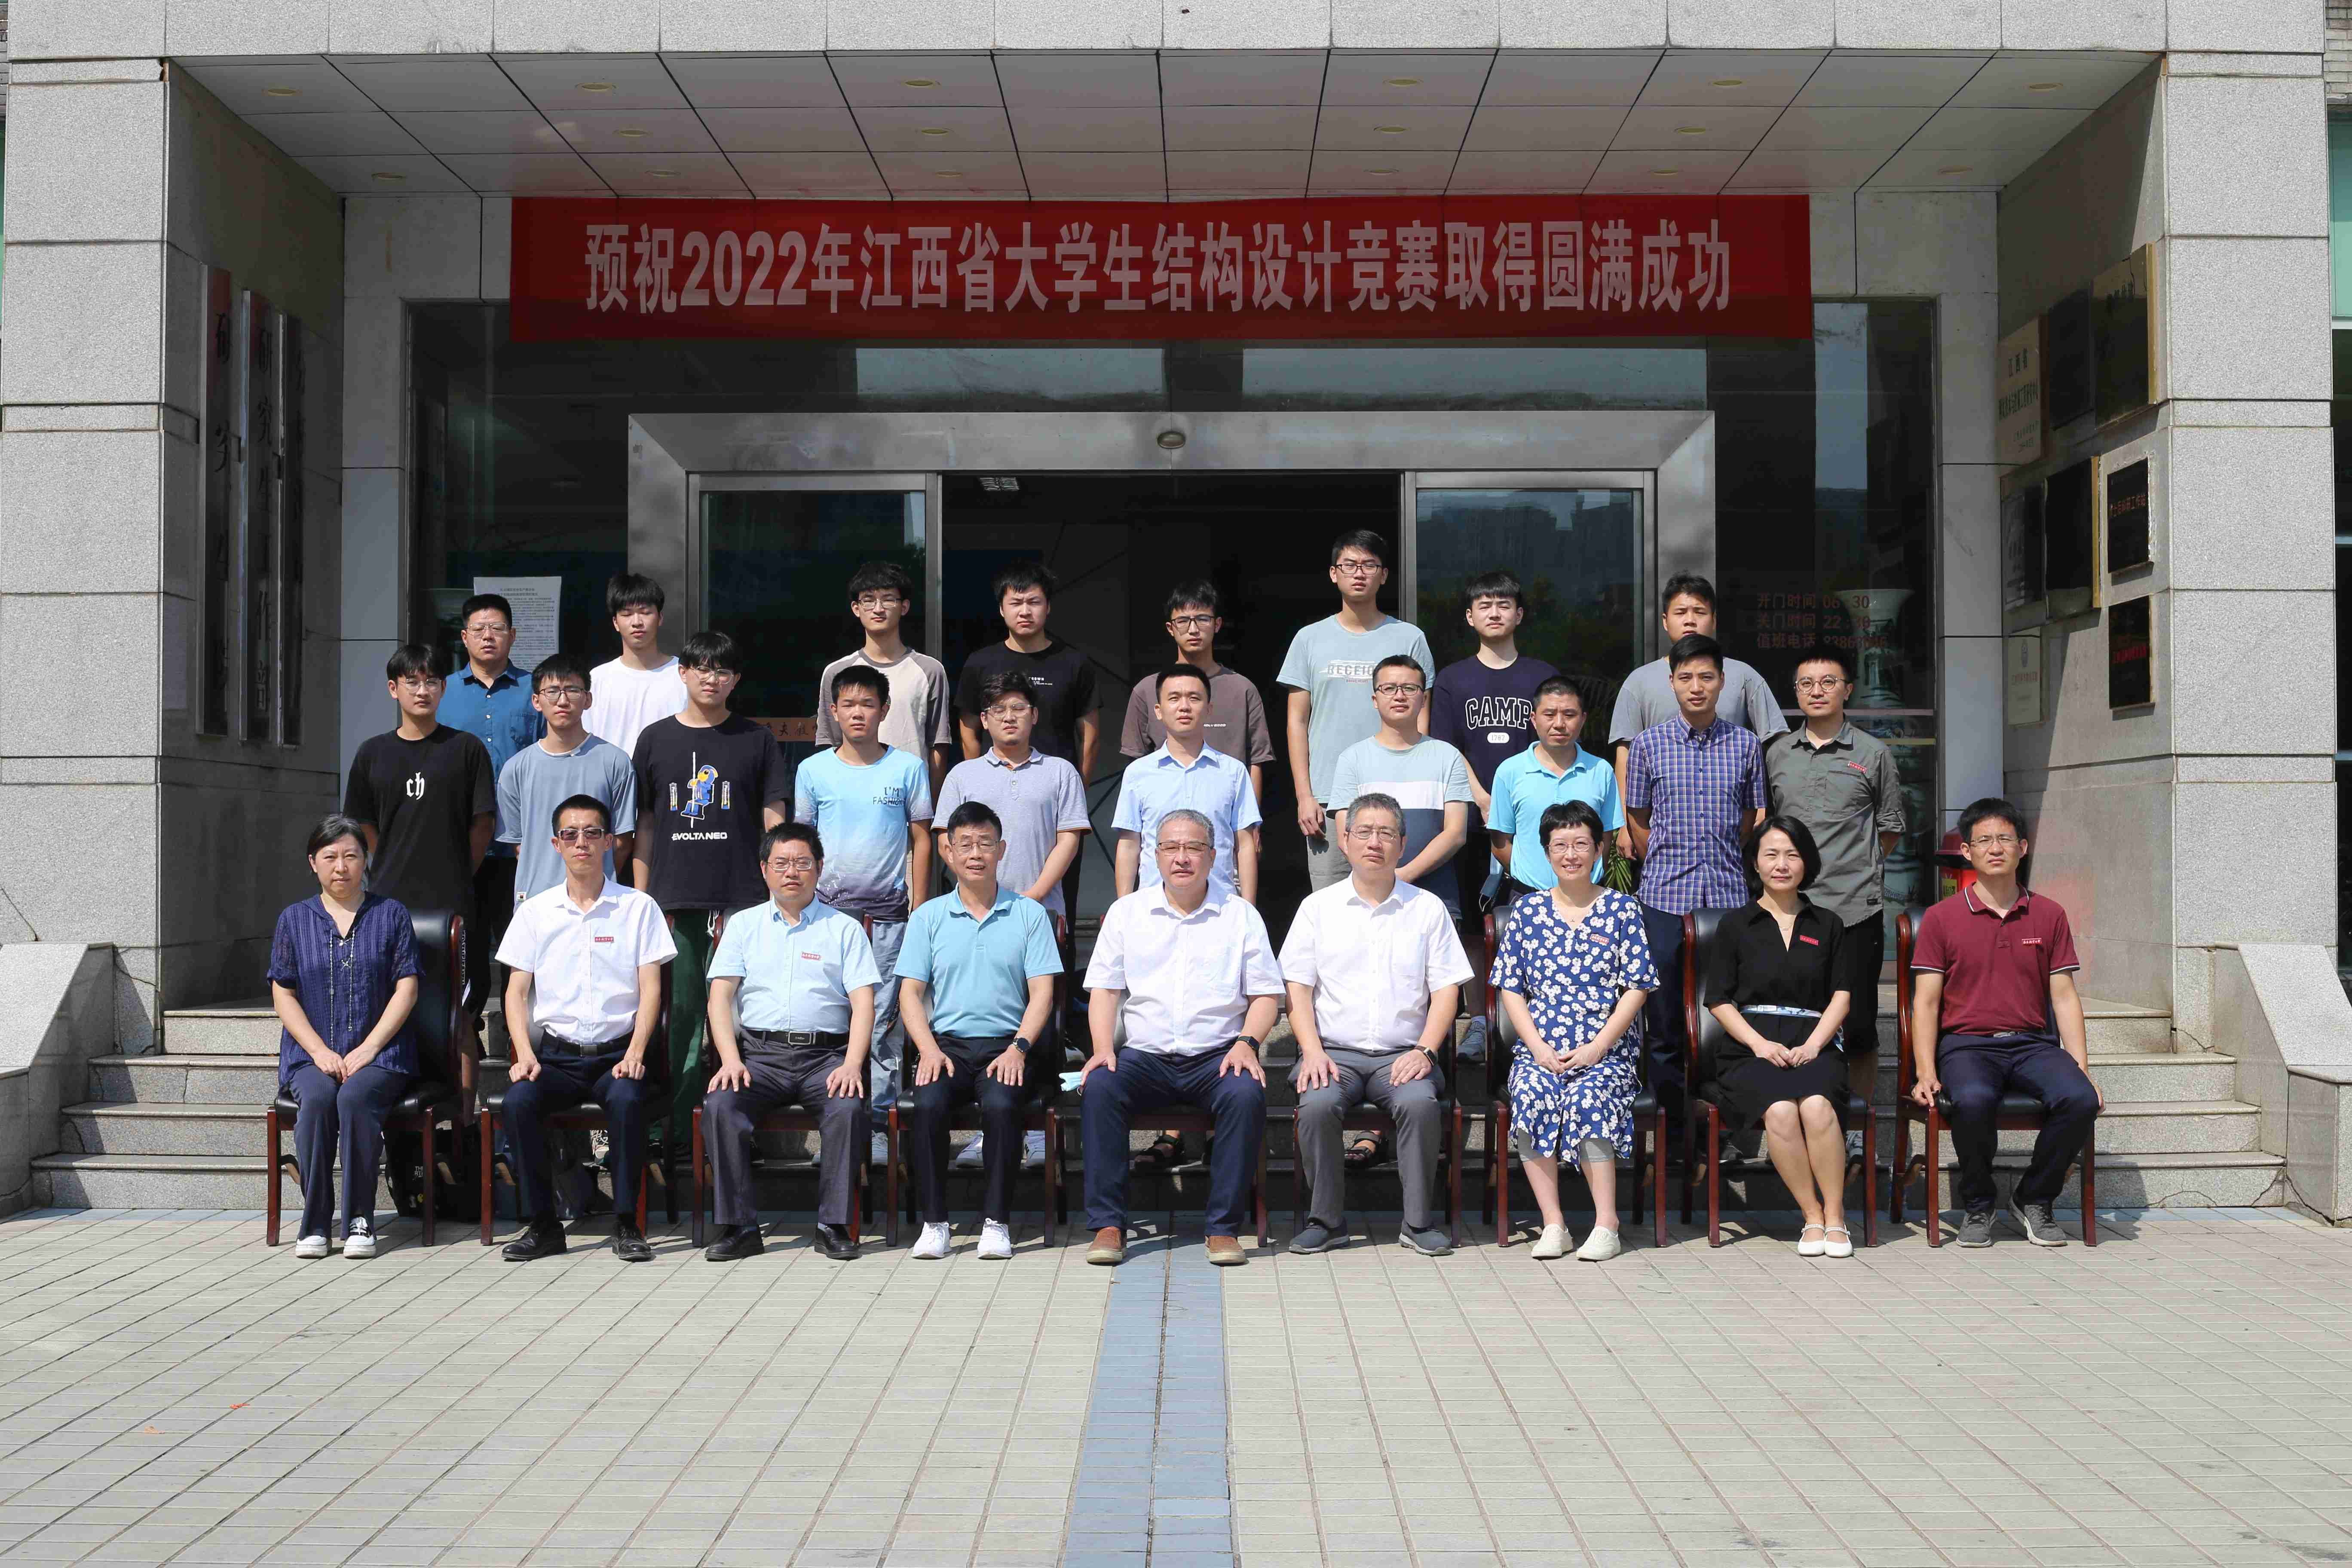 “南航杯”第六届江西省大学生结构设计竞赛暨第十五届全国大学生结构设计竞赛分区赛（江西）在南昌航空大学举行